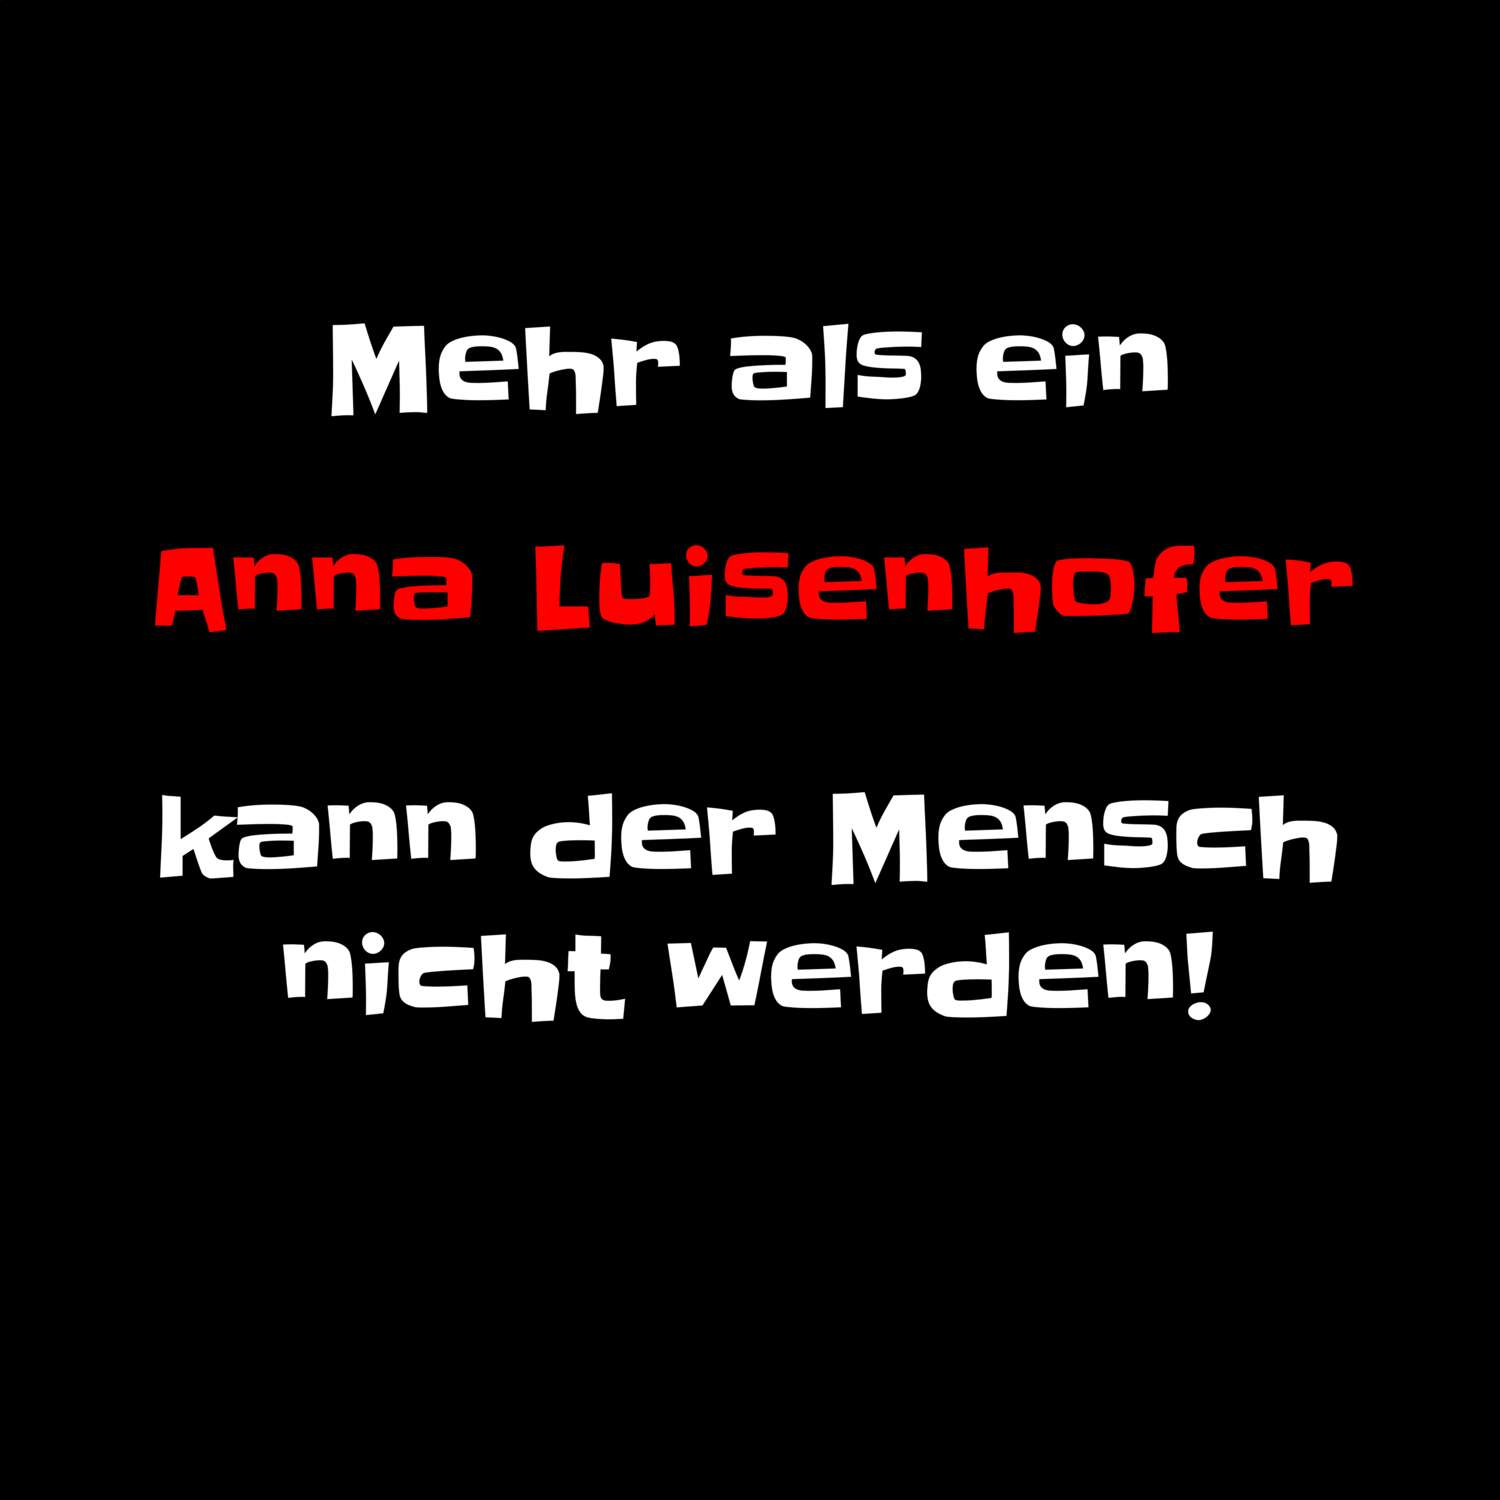 Anna Luisenhof T-Shirt »Mehr als ein«